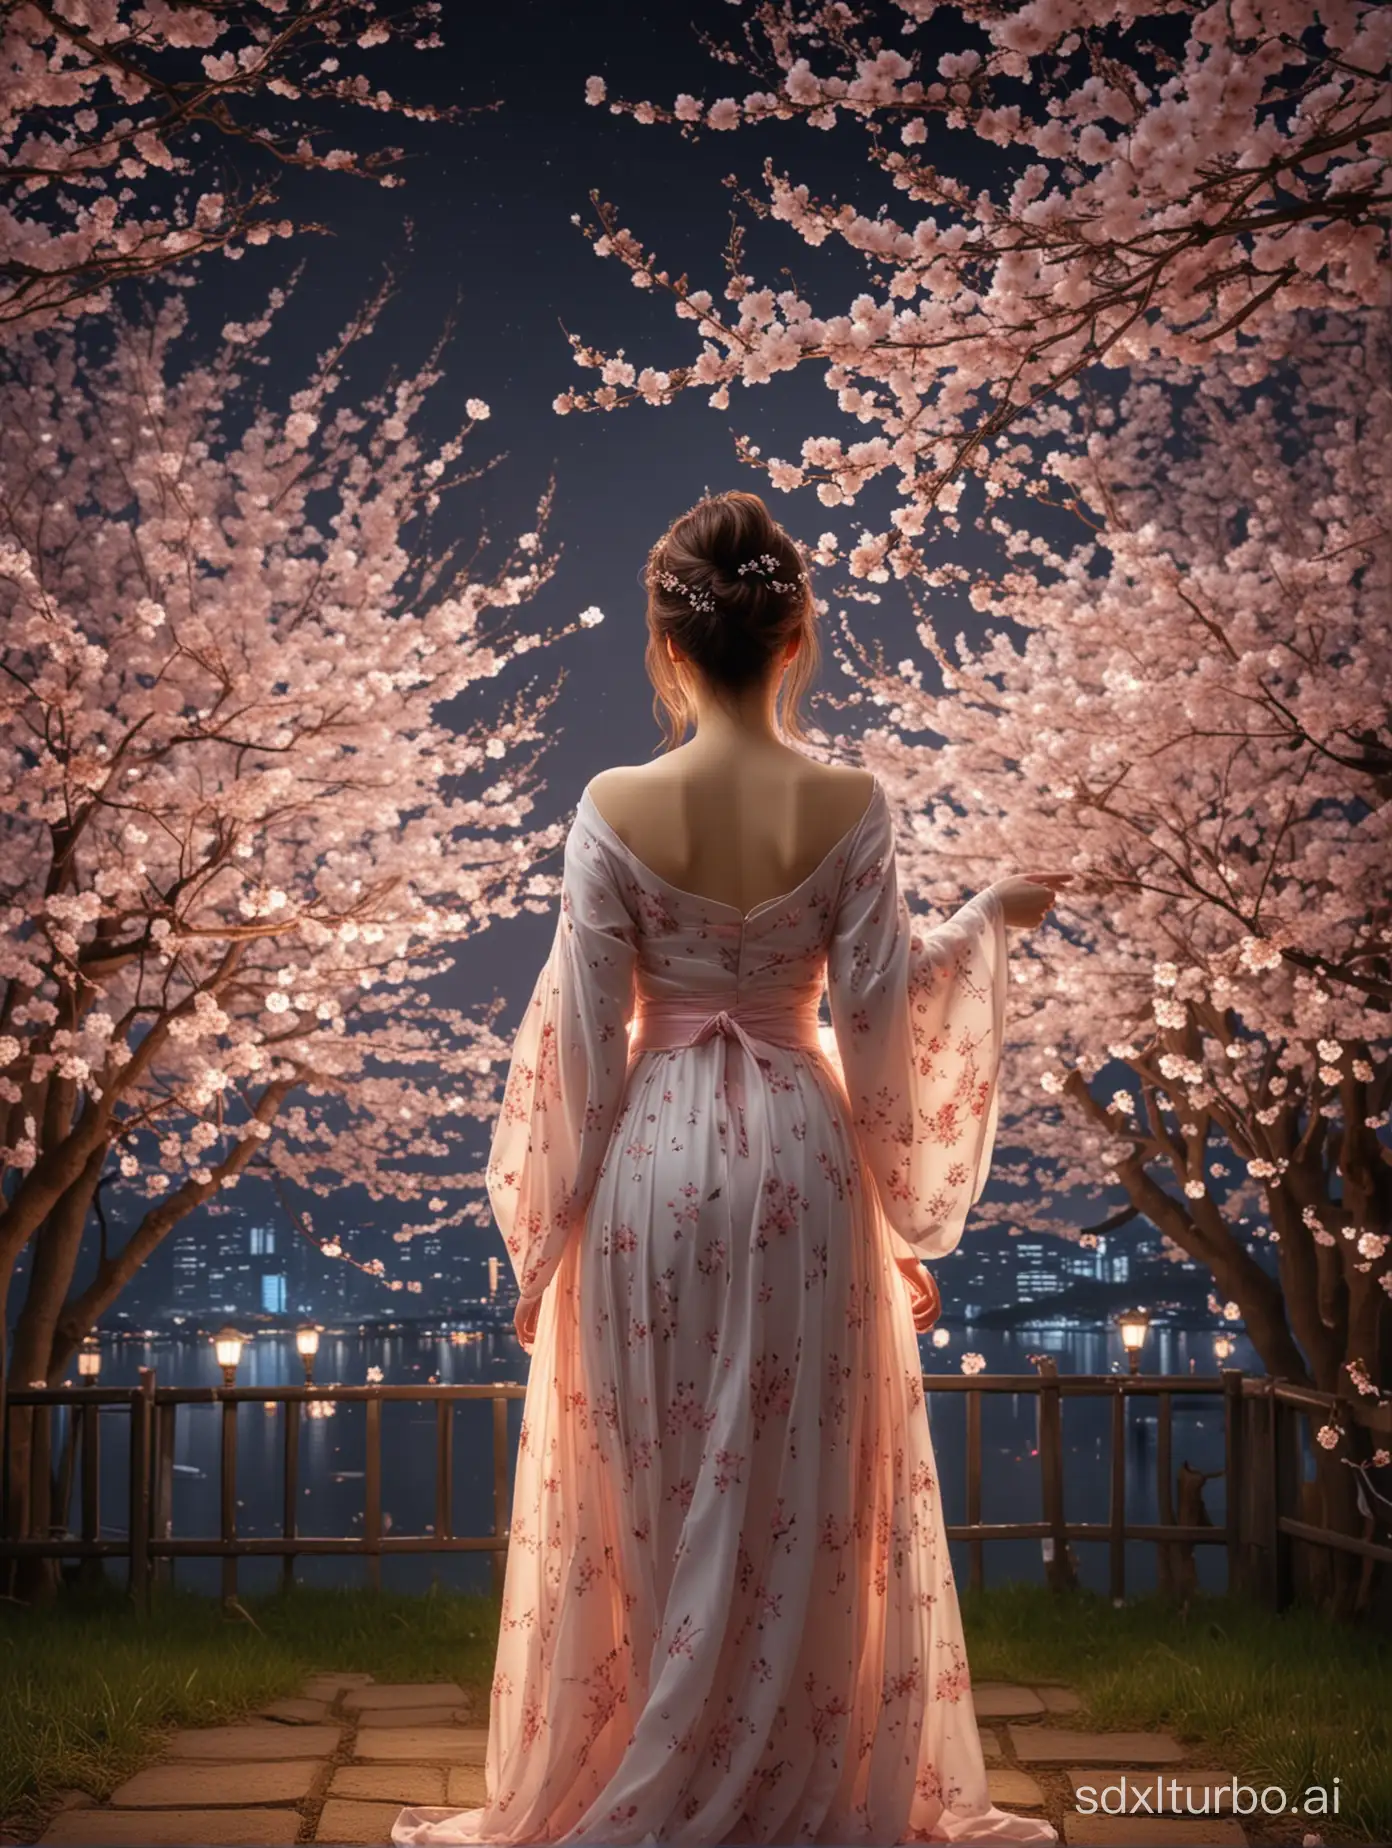 傑作、最高品質、超繊細、リアル、夜の桜🌸、ライトアップ、桜を見上げている後ろ姿の女性